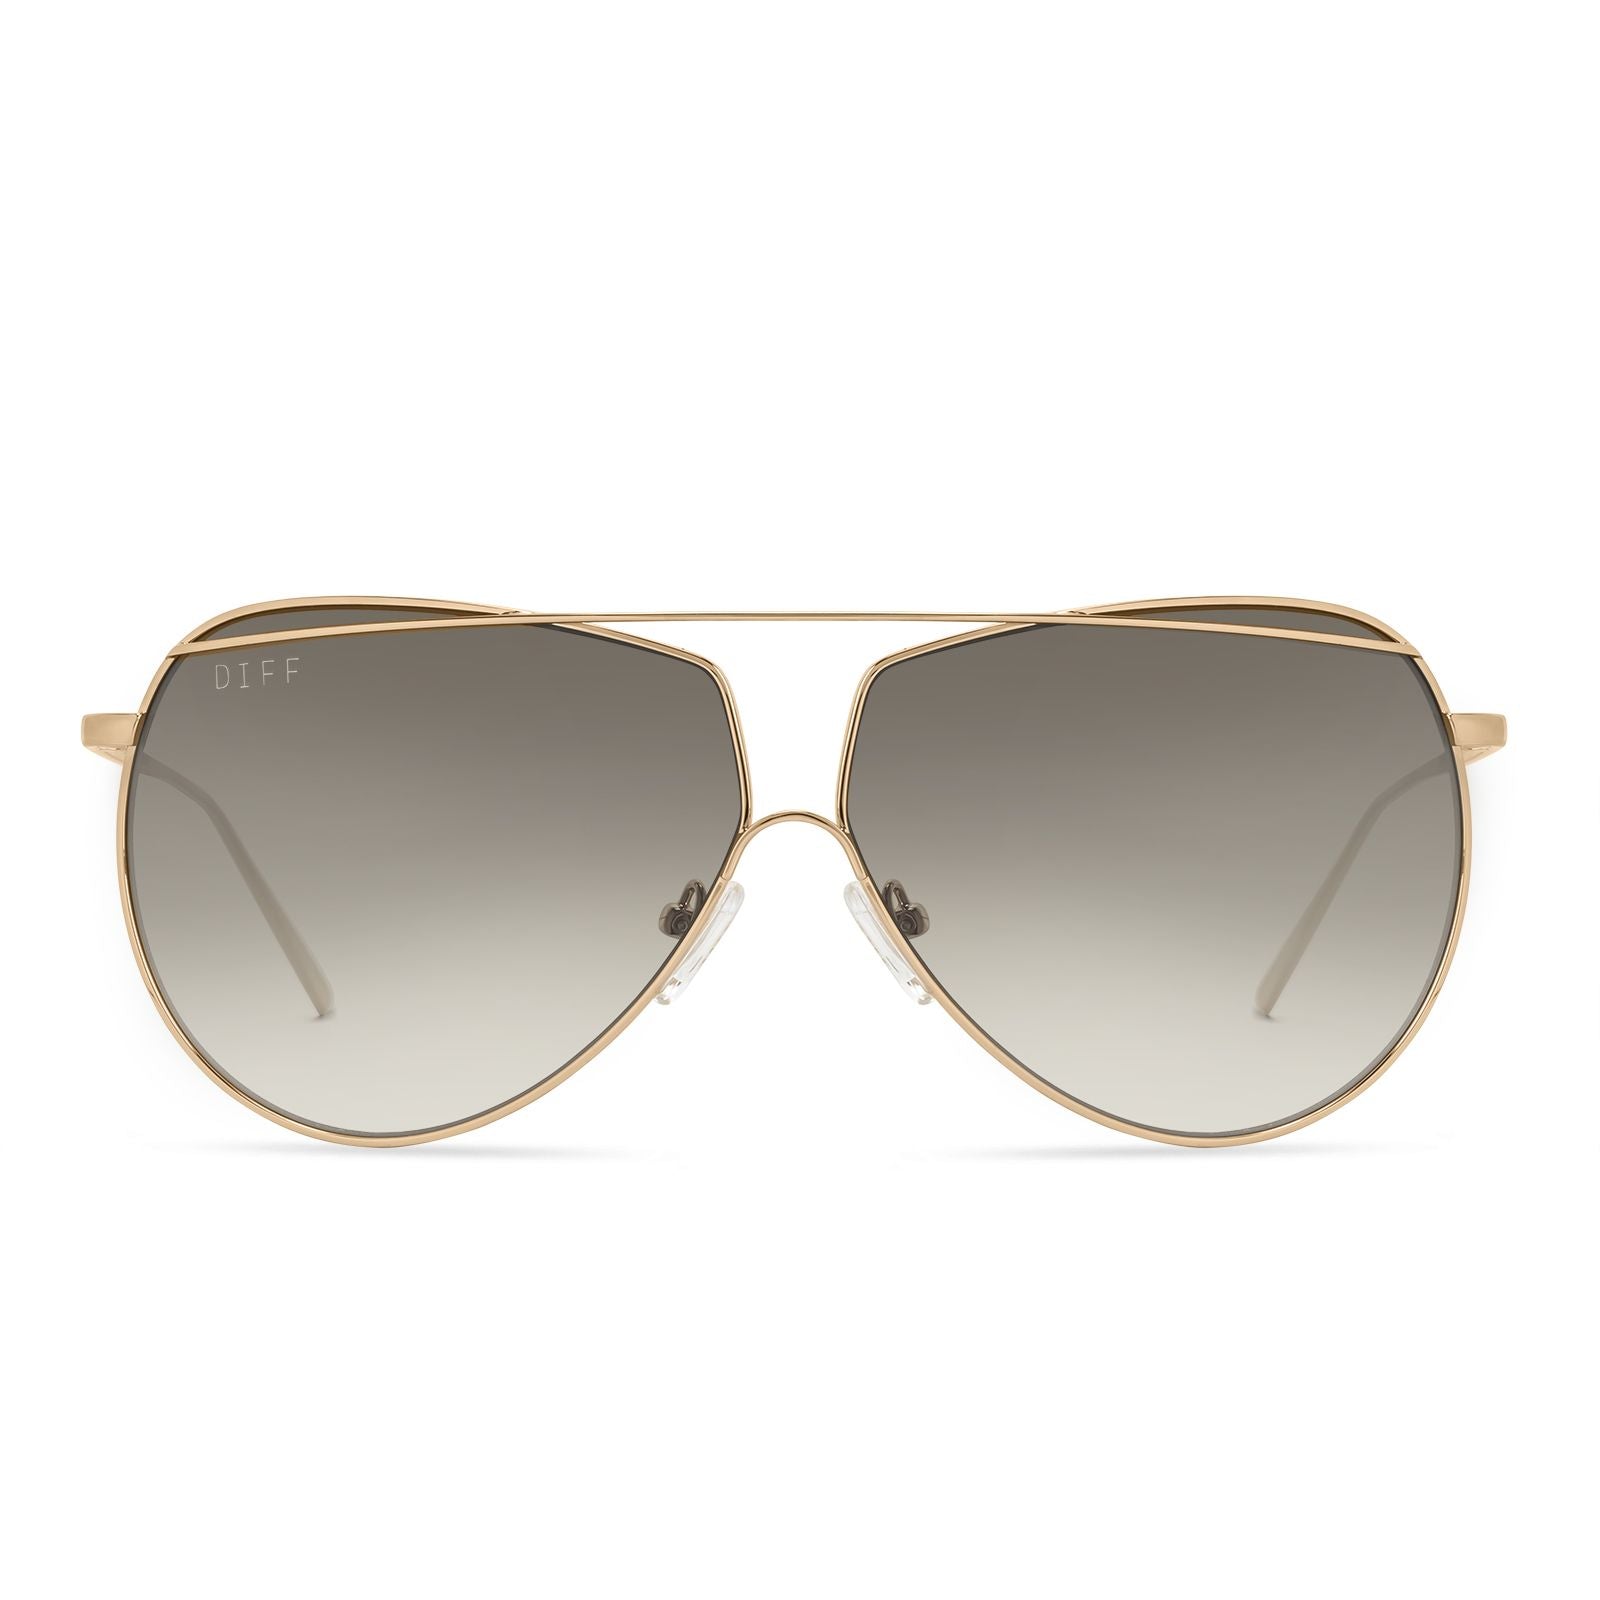 DIFF | Maeve - Gold Gradient Sunglasses